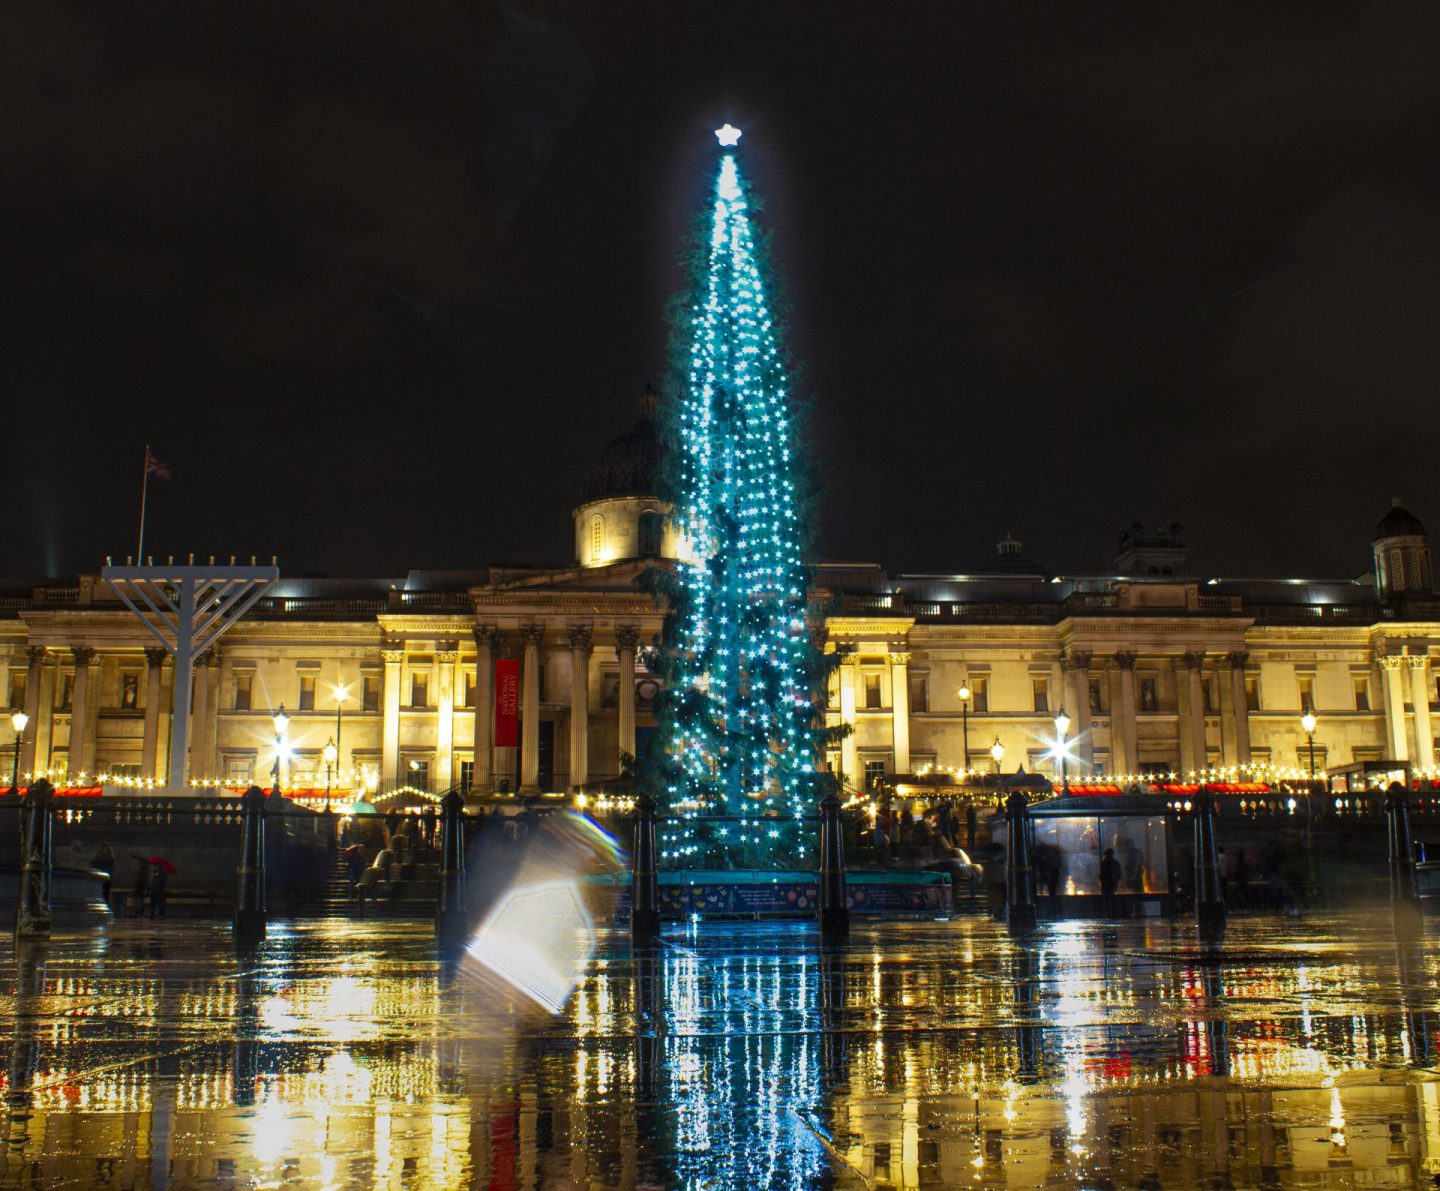 Trafalgar Square, Trafalgar Square London, Trafalgar Square Christmas Tree